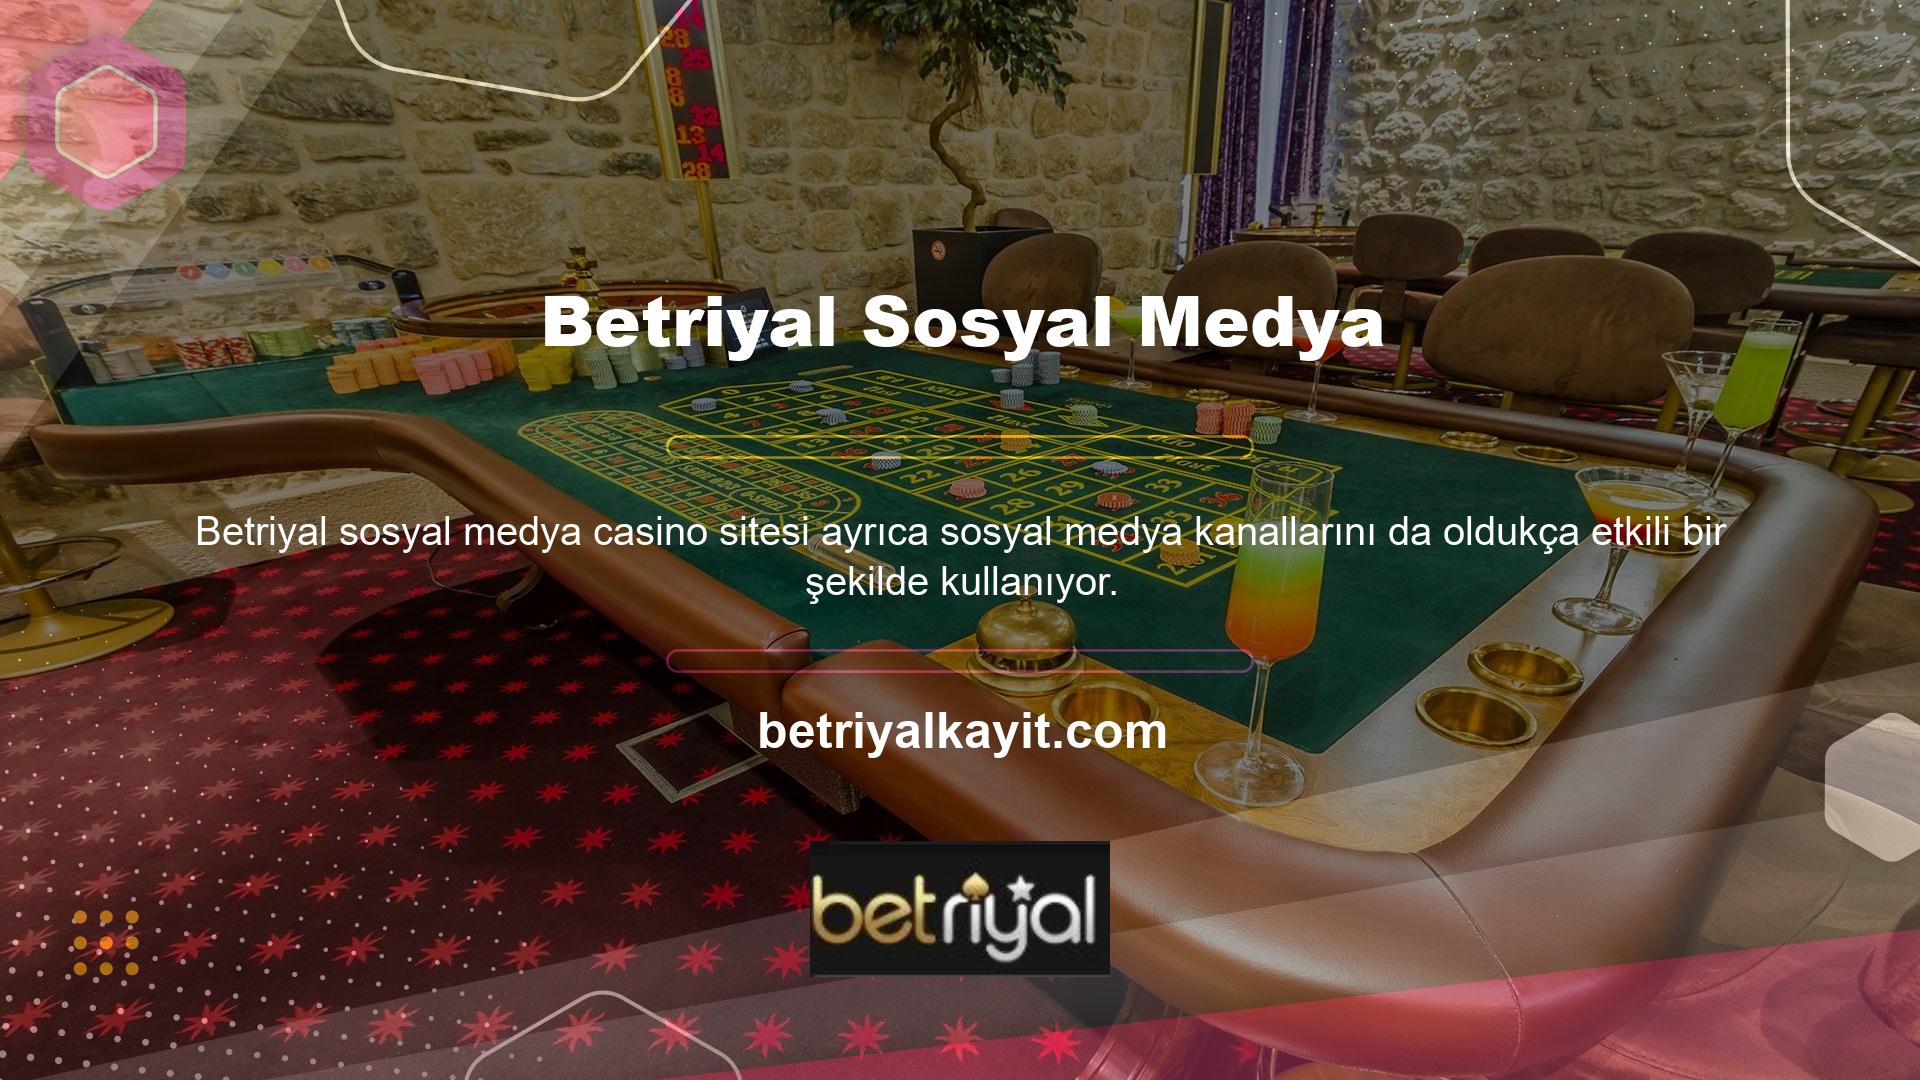 Özellikle Betriyal sosyal medyası ve Instagram gibi araçları sıklıkla kullanan casino siteleri, son dönemde üyelerinin ihtiyaçlarını Telegram hizmetleri aracılığıyla karşılamaya çalışıyor